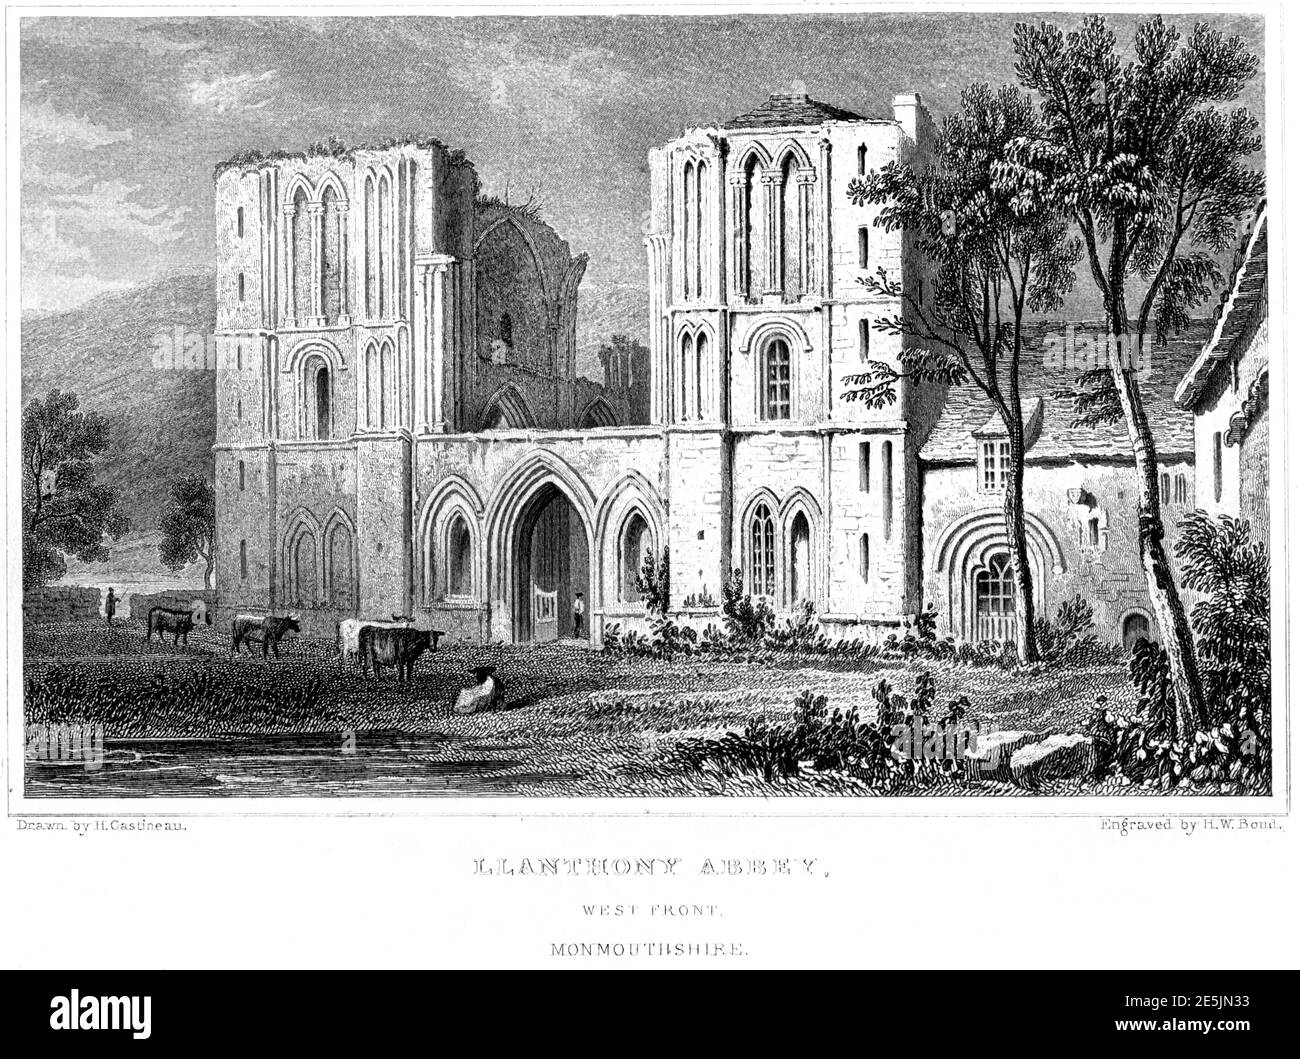 Ein Stich von Llanthony Abbey (Priory), West Front, Monmouthshire, gescannt in hoher Auflösung aus einem Buch im Jahr 1854 veröffentlicht. Für urheberrechtlich frei gehalten. Stockfoto